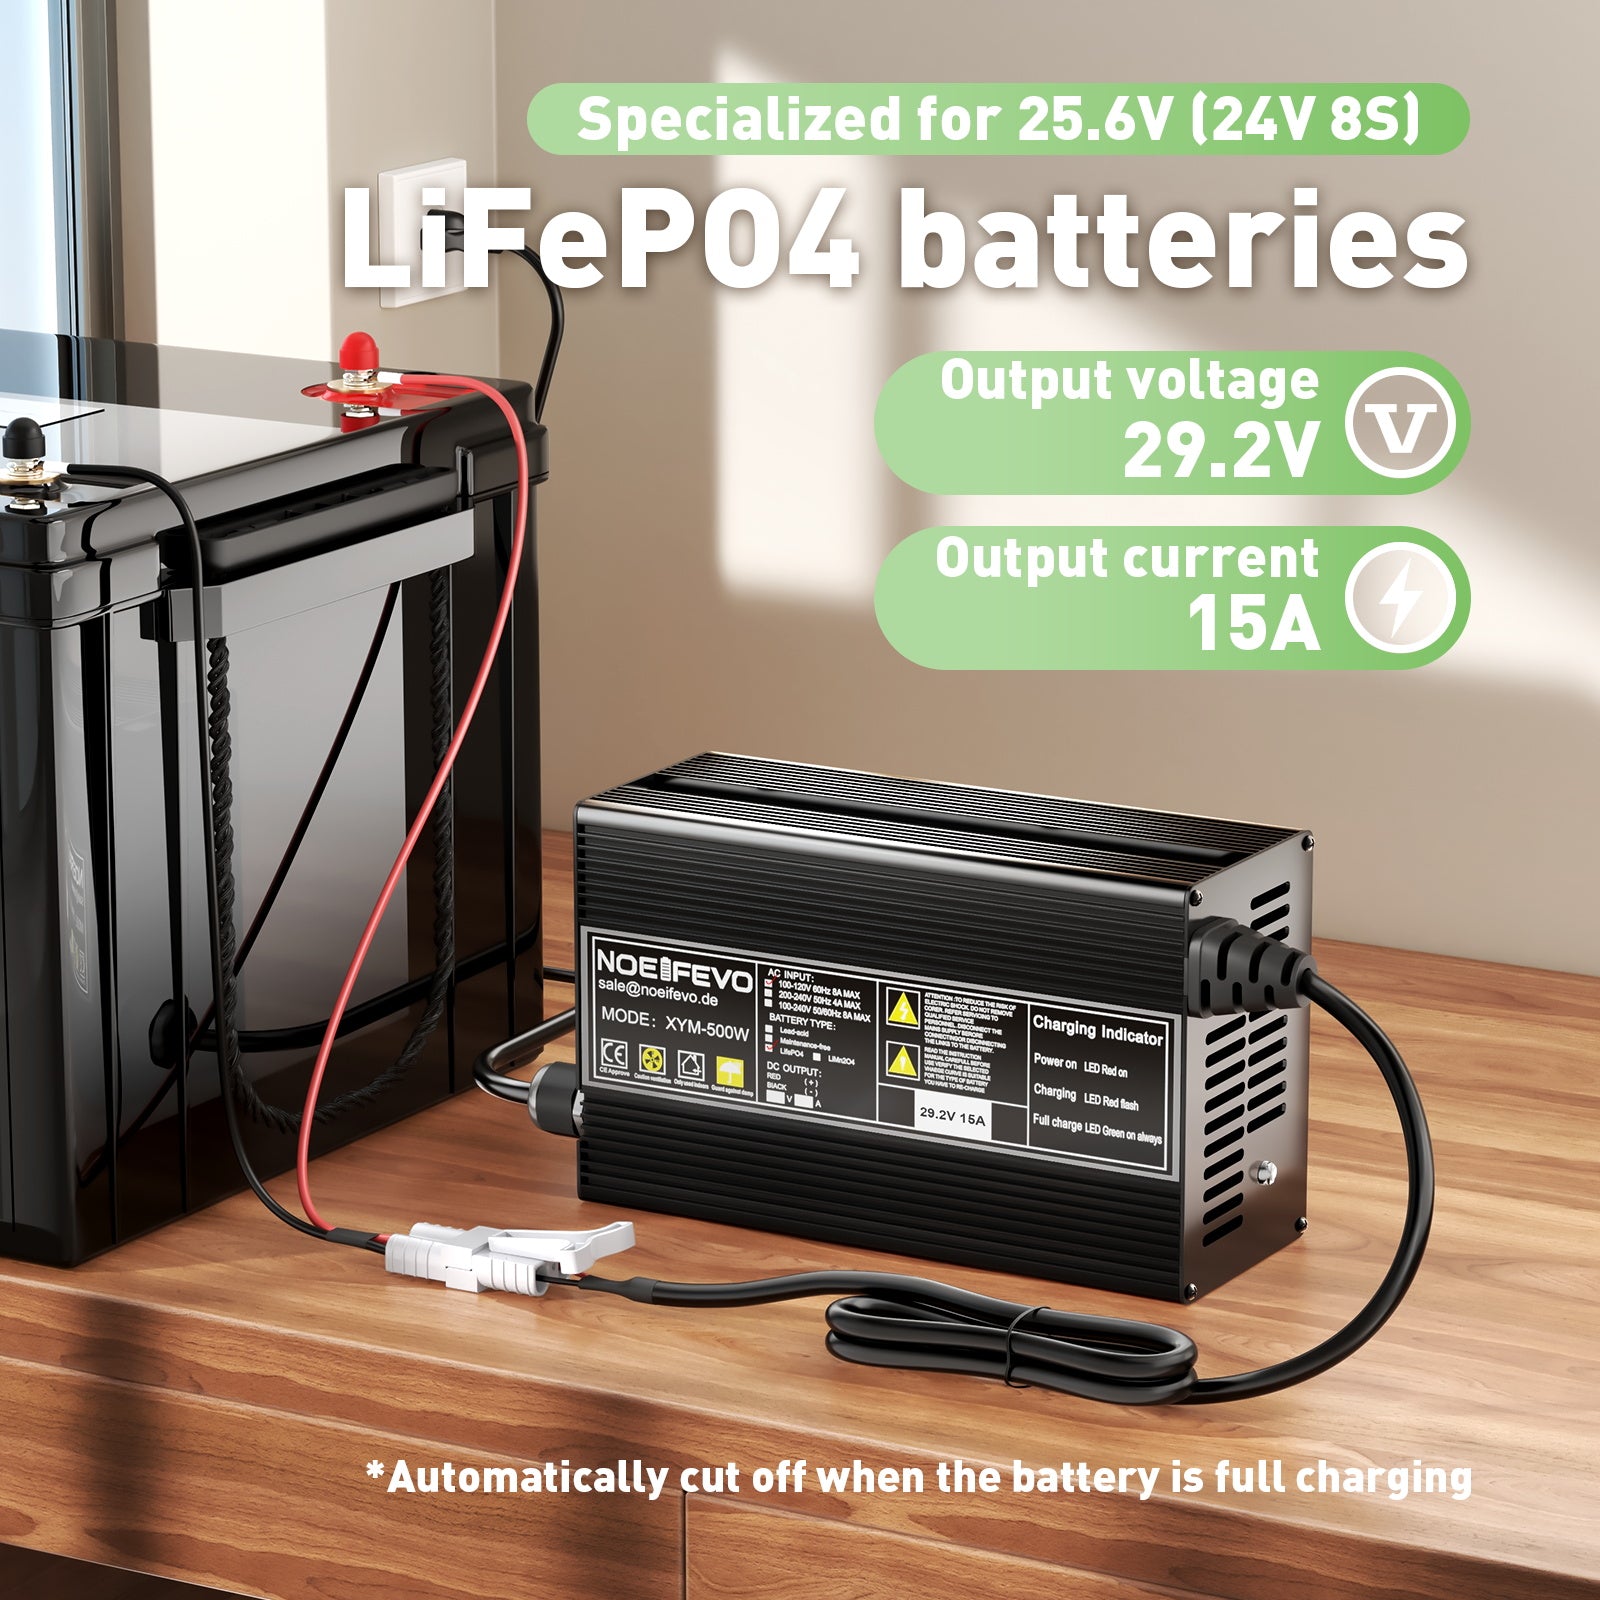 NOEIFEVO 29.2V 15A LiFePO4 battery charger For 24V 25.6V 8S LFP battery